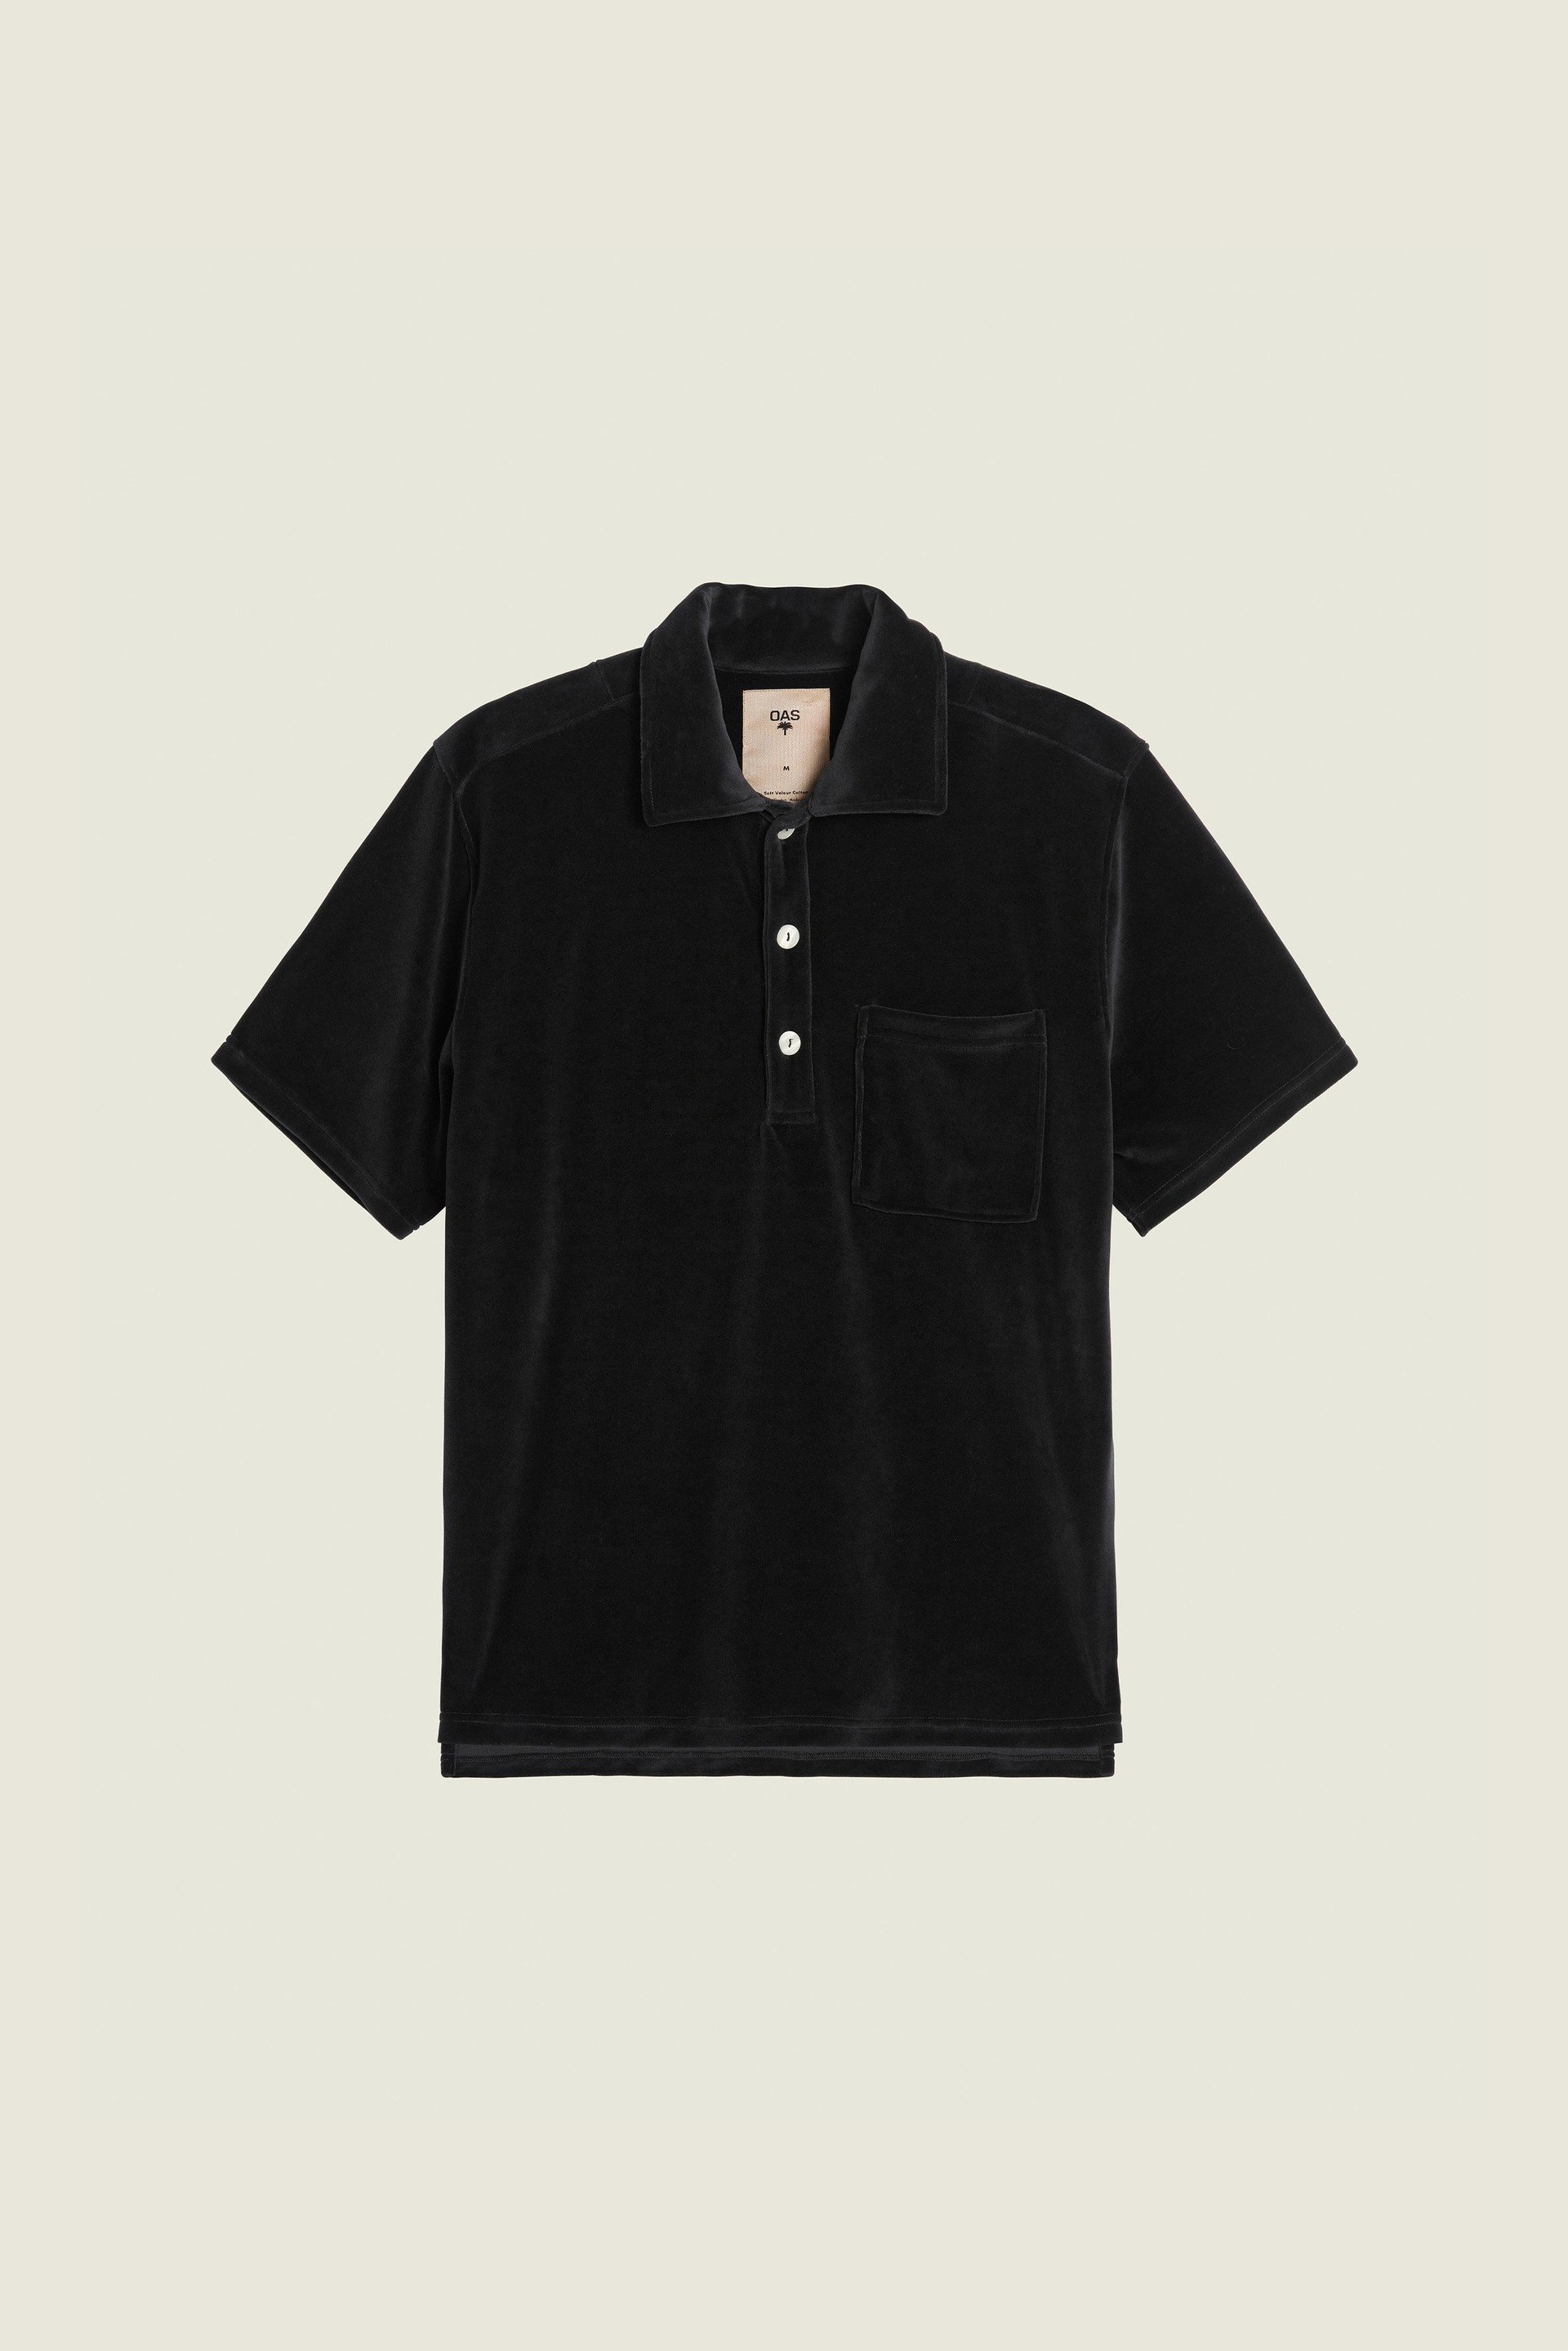 Nearly Black Girona Velour Shirt